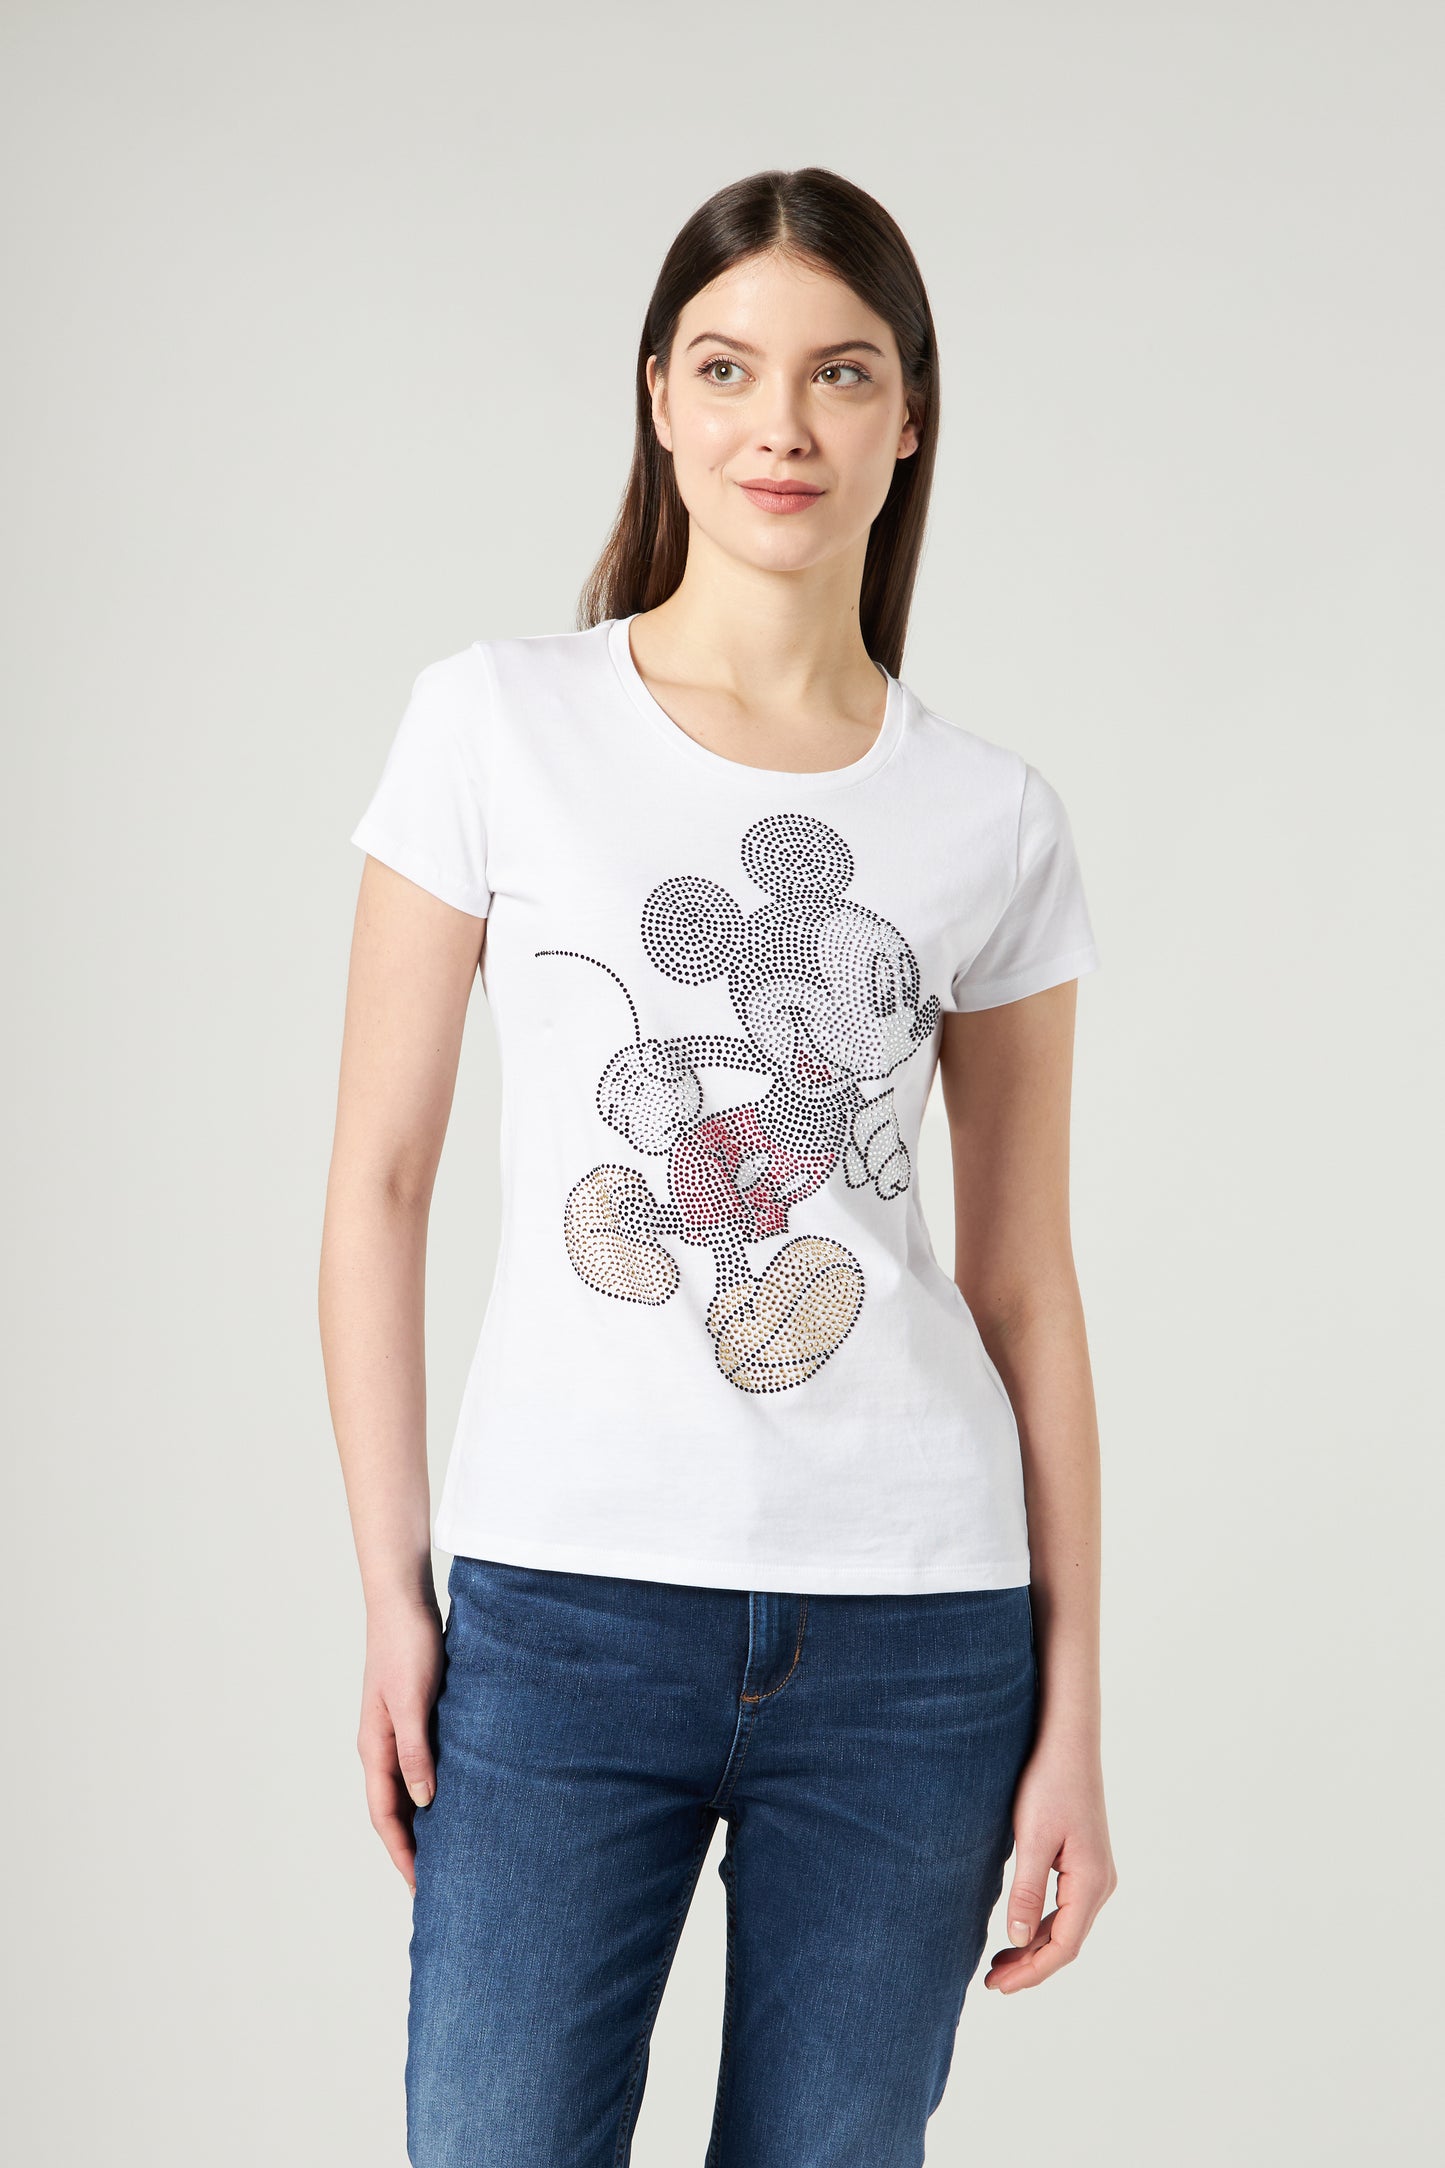 LIU JO T-shirt Walt Disney